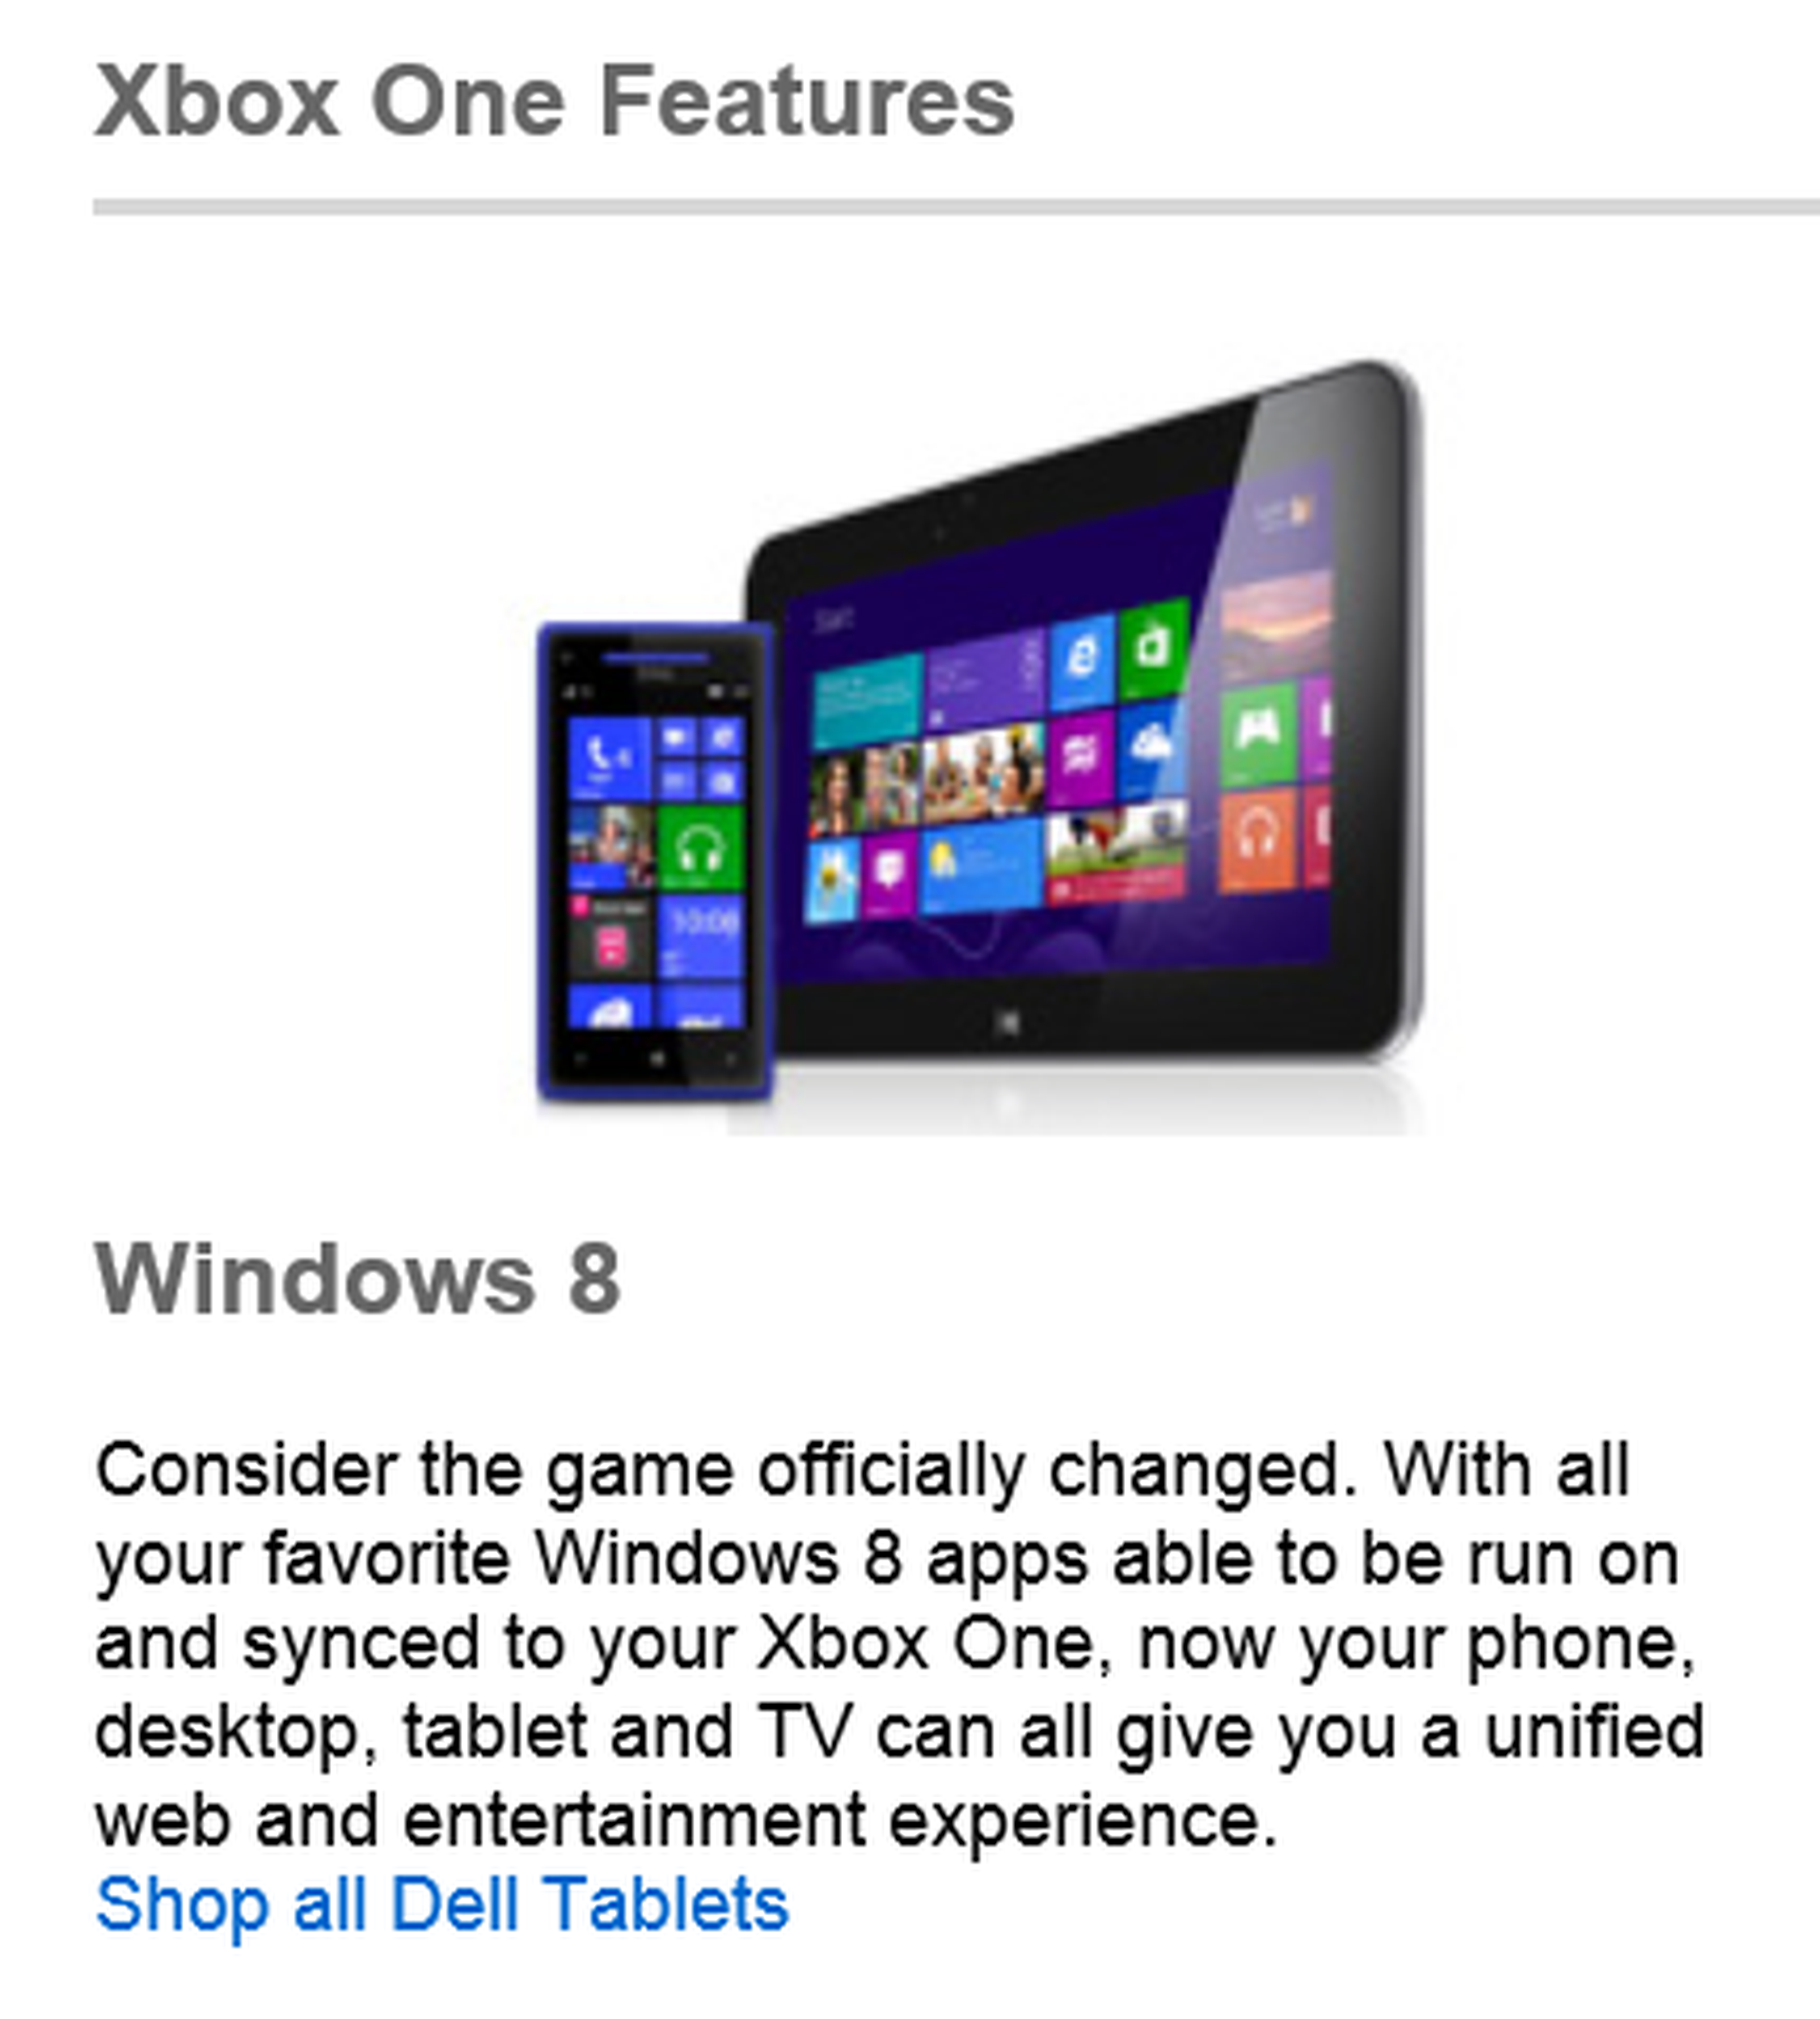 Las apps de Windows 8 podrían ejecutarse en la XBox One